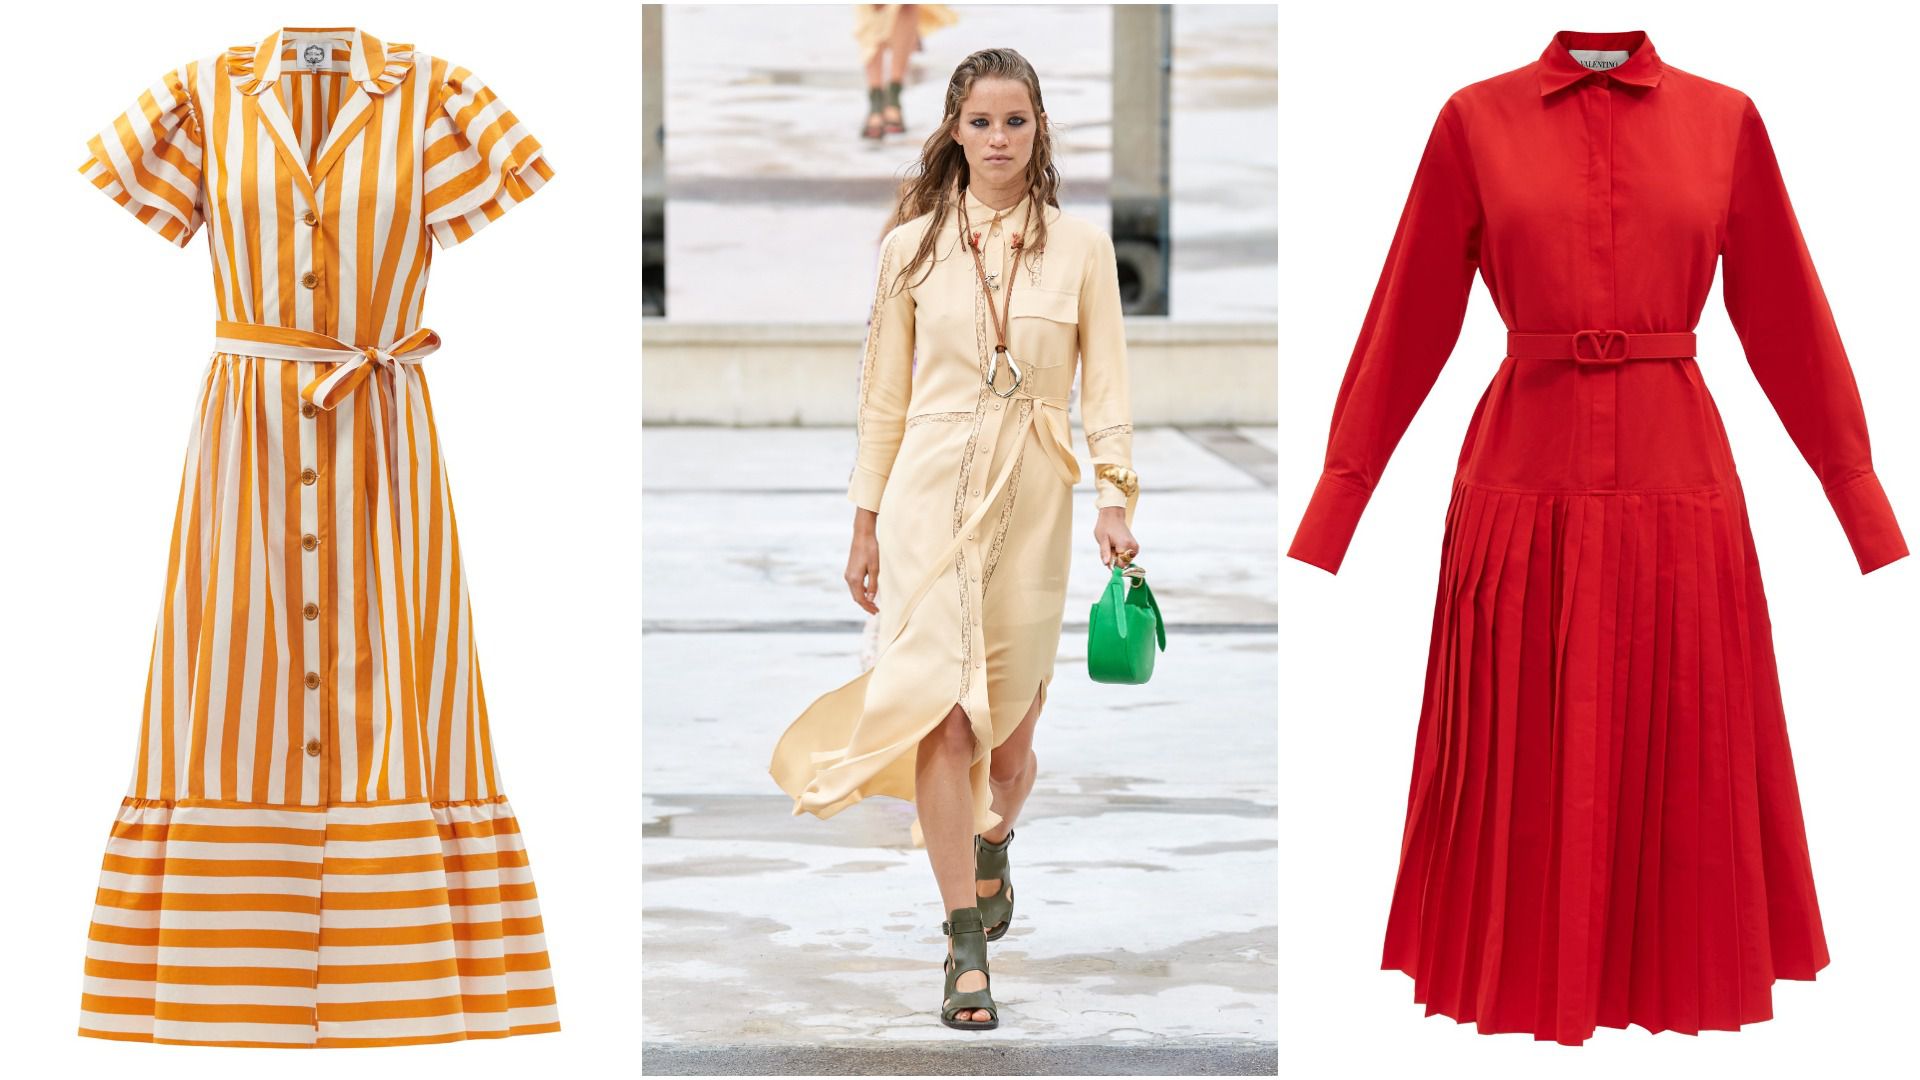 Ljetni klasik koji odolijeva prolaznosti trendova: U ormar dodajte košulju-haljinu, modni spas za svaku prigodu